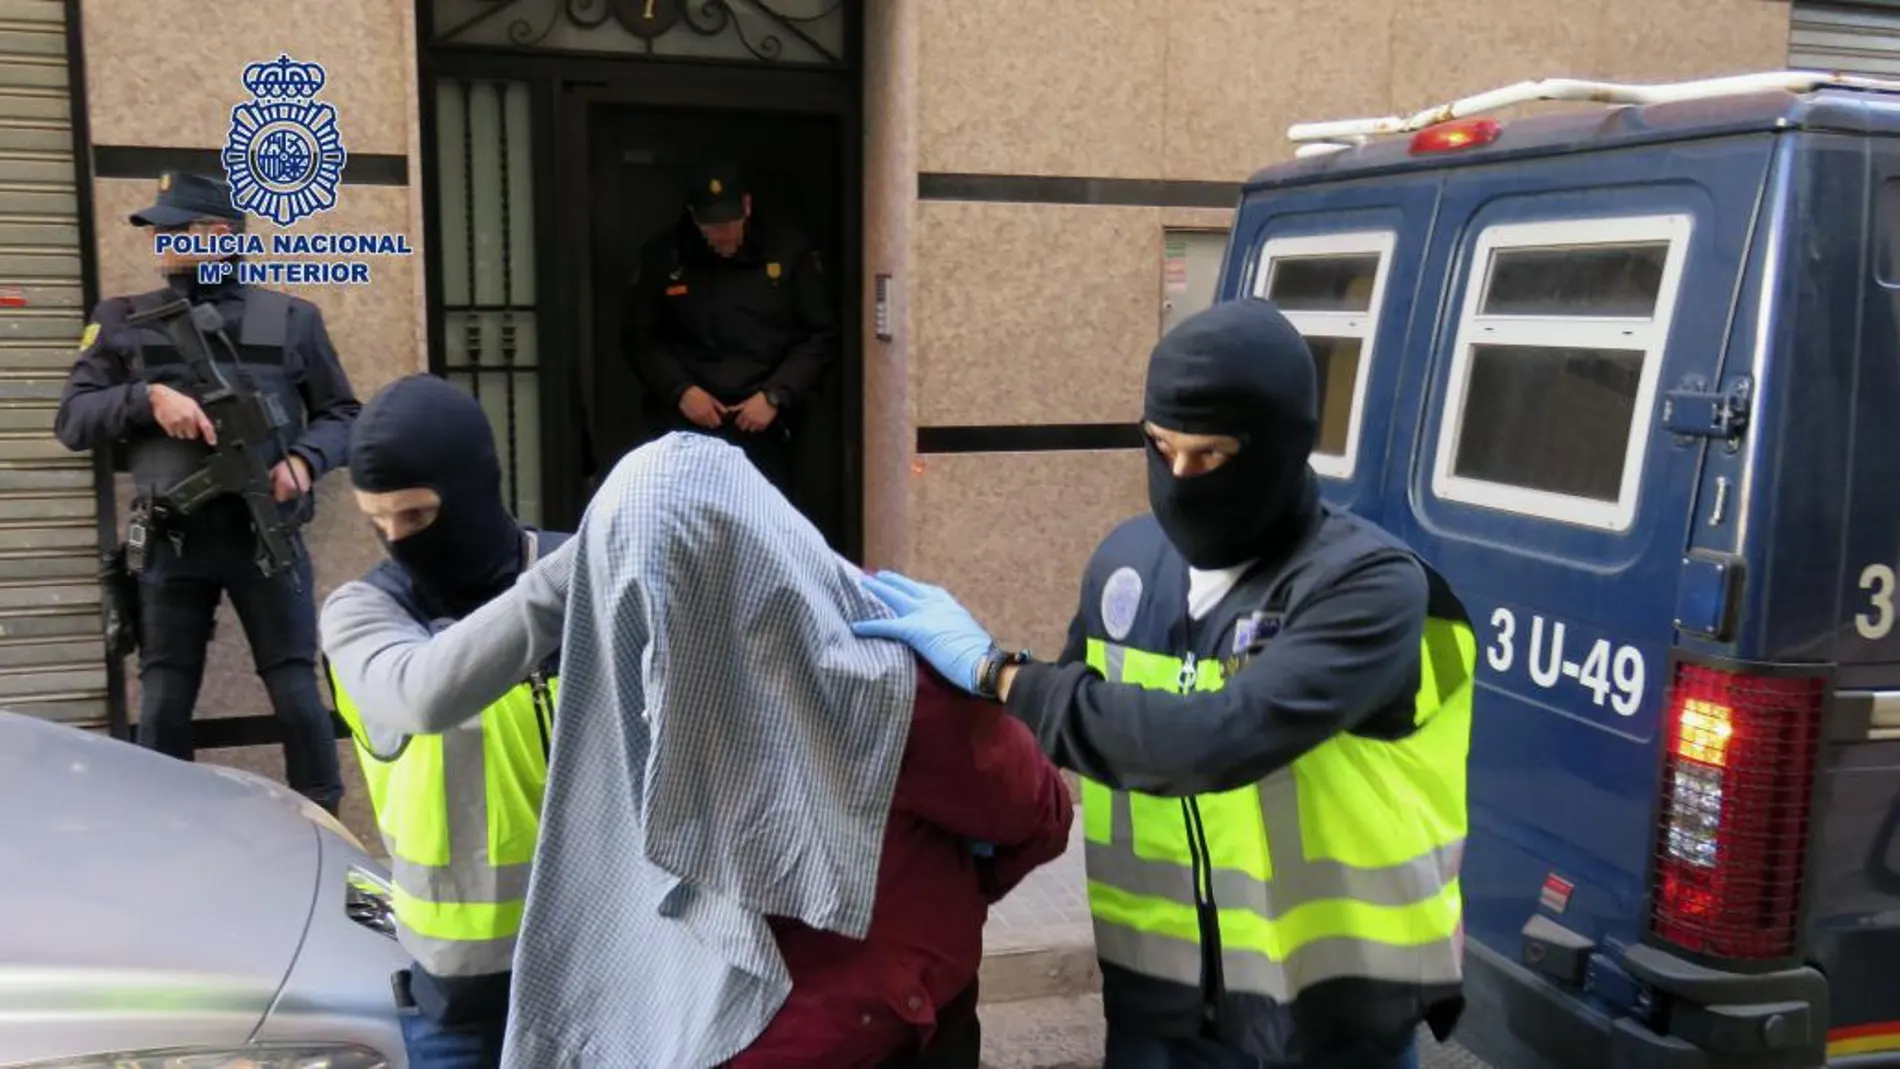 Fotografía facilitada por la Policía Nacional de la dentención, en la localidad valenciana de Crevillente, de uno de los 7 yihadistas detenidos